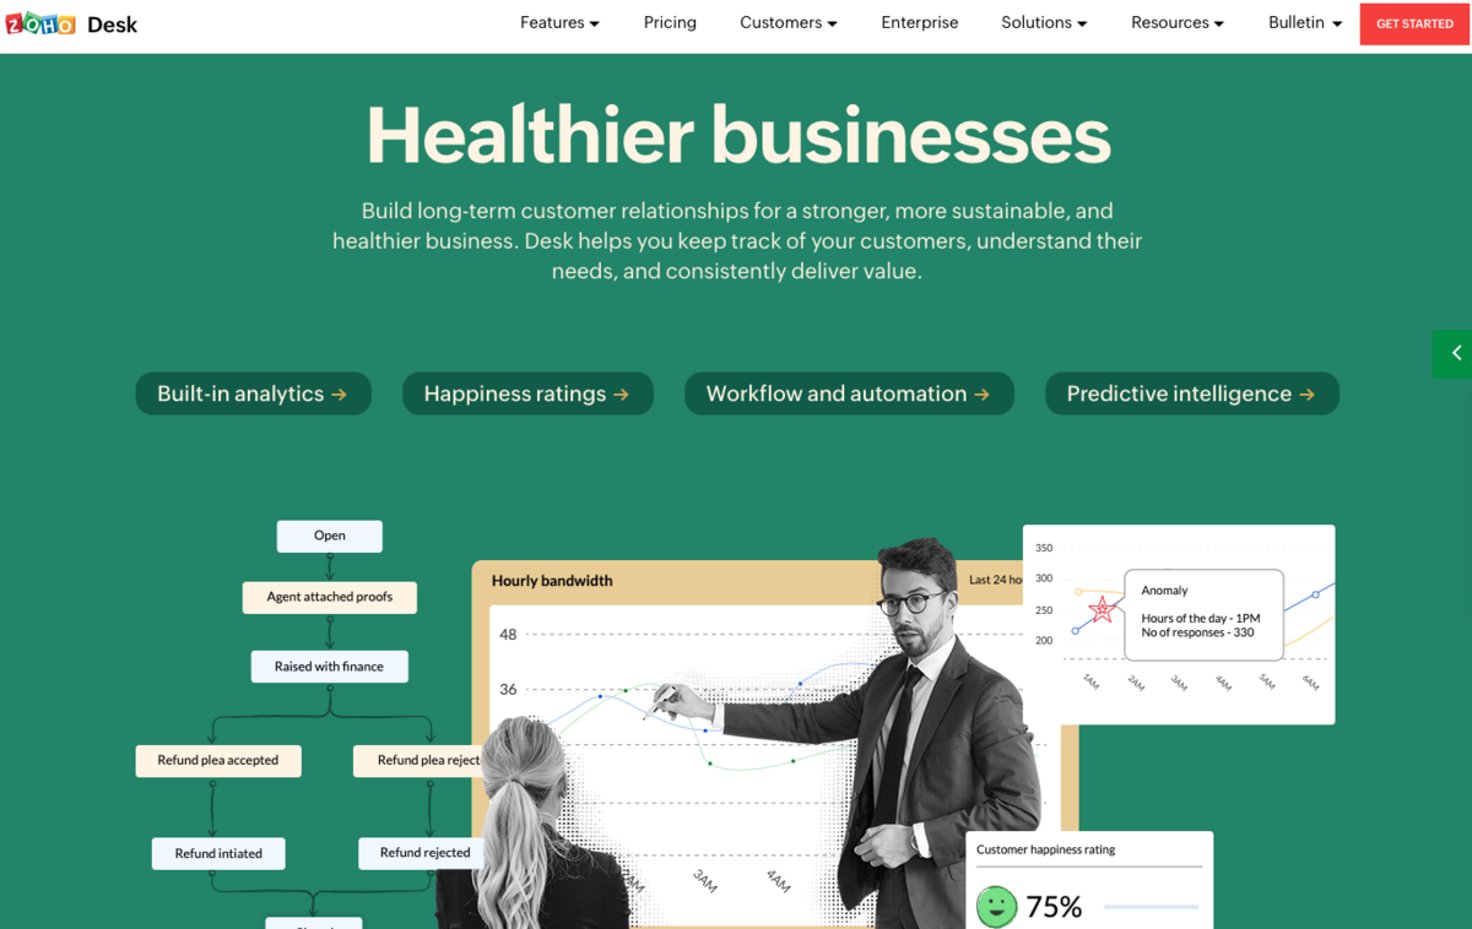 Zoho Desk: Healthier businesses